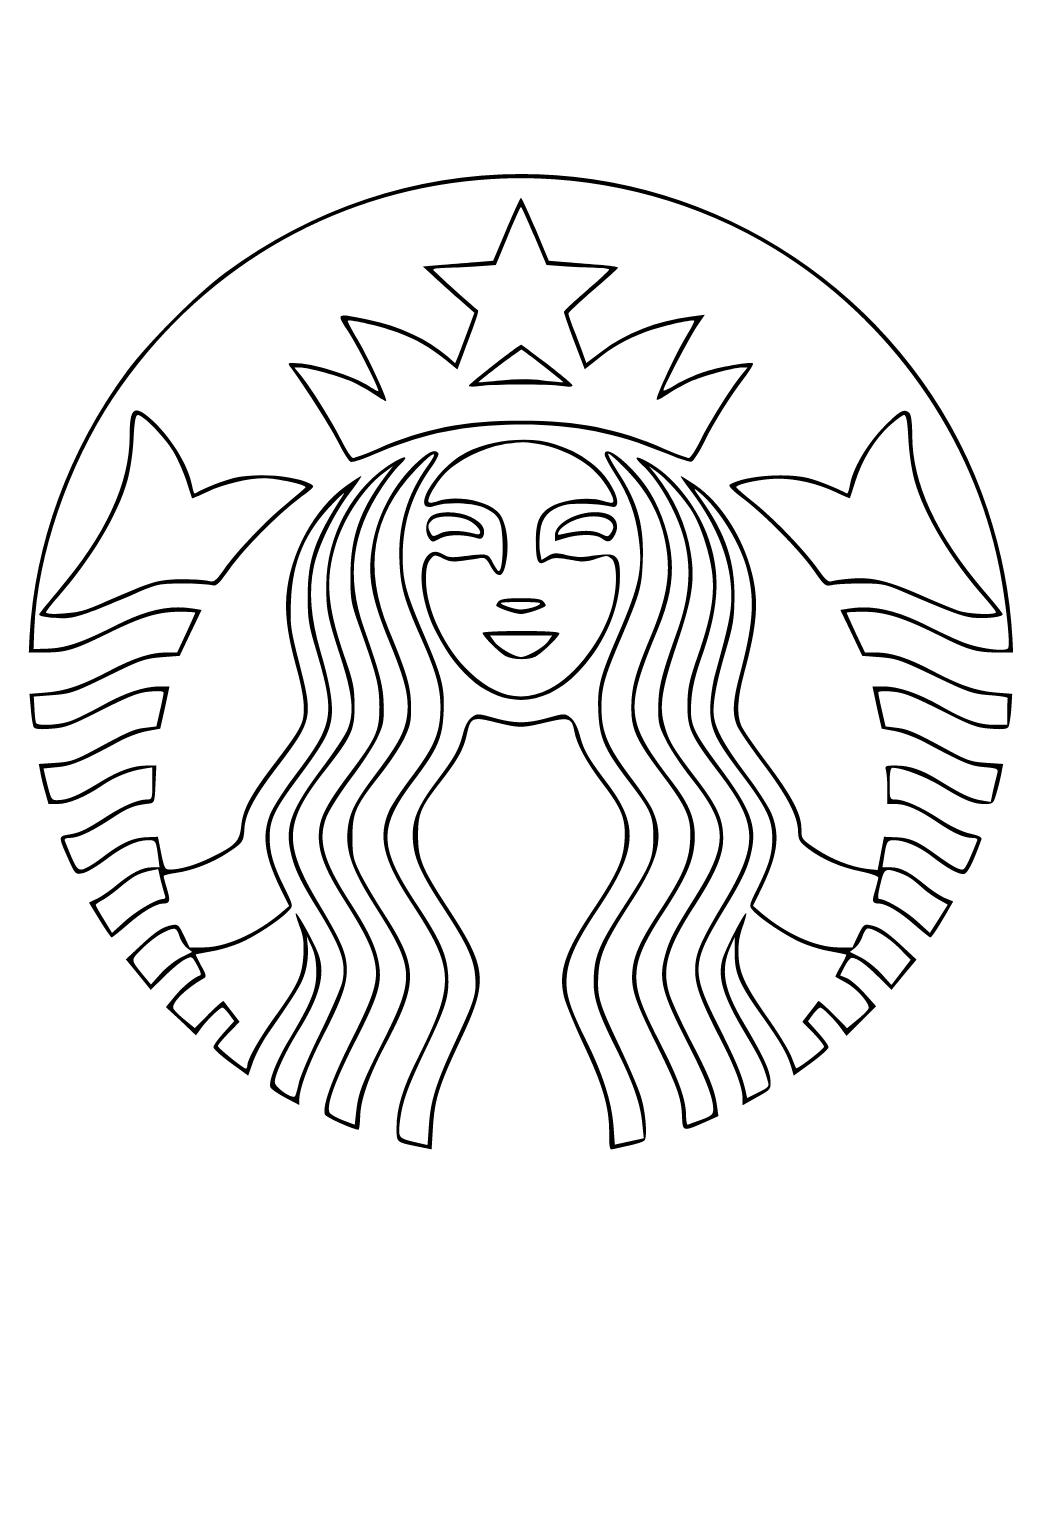 Starbuck